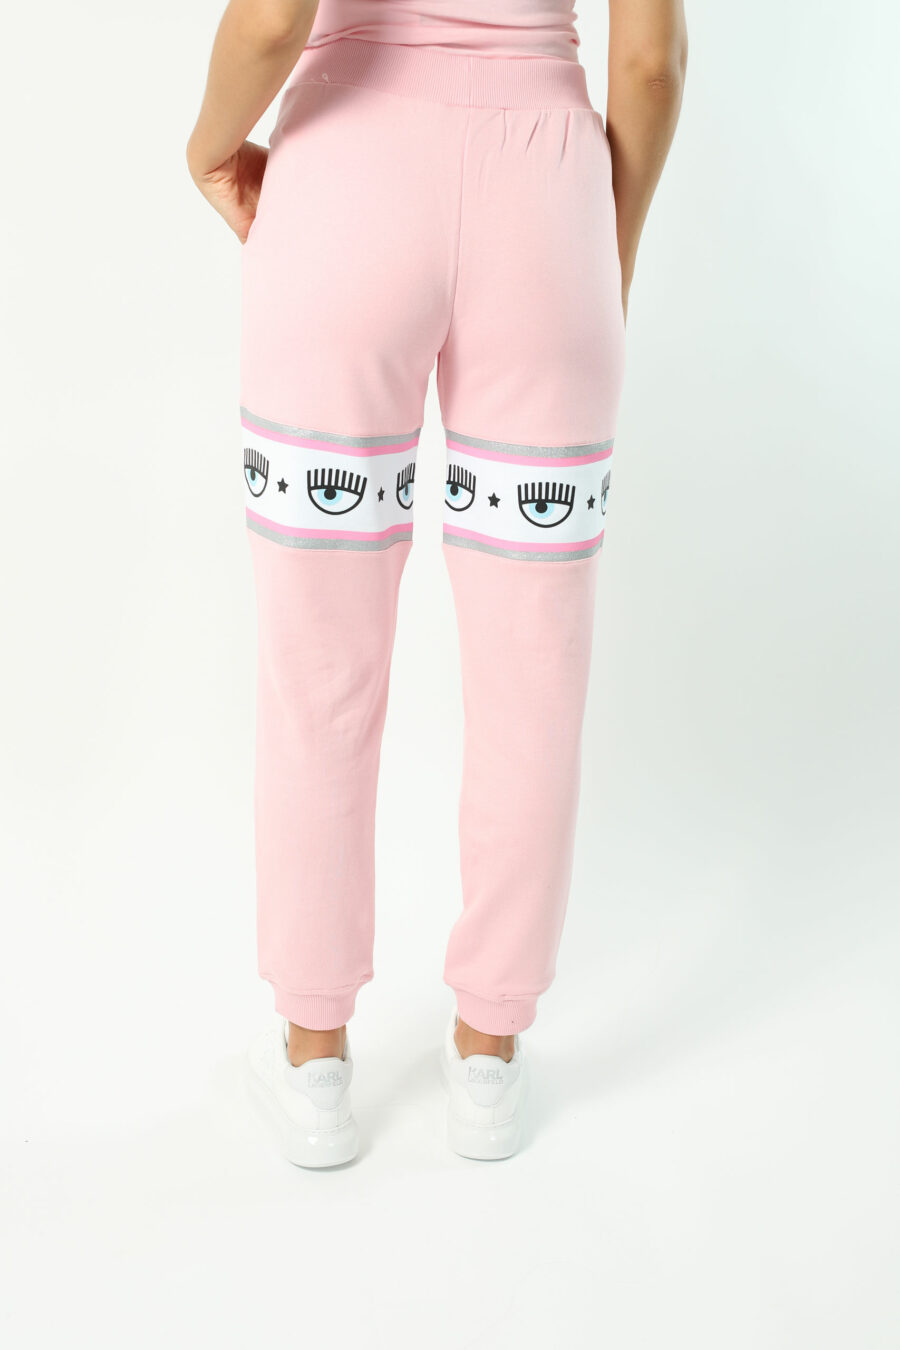 Pantalón de chándal rosa con capucha y logo en cinta blanco y plateado” - Photos 2725